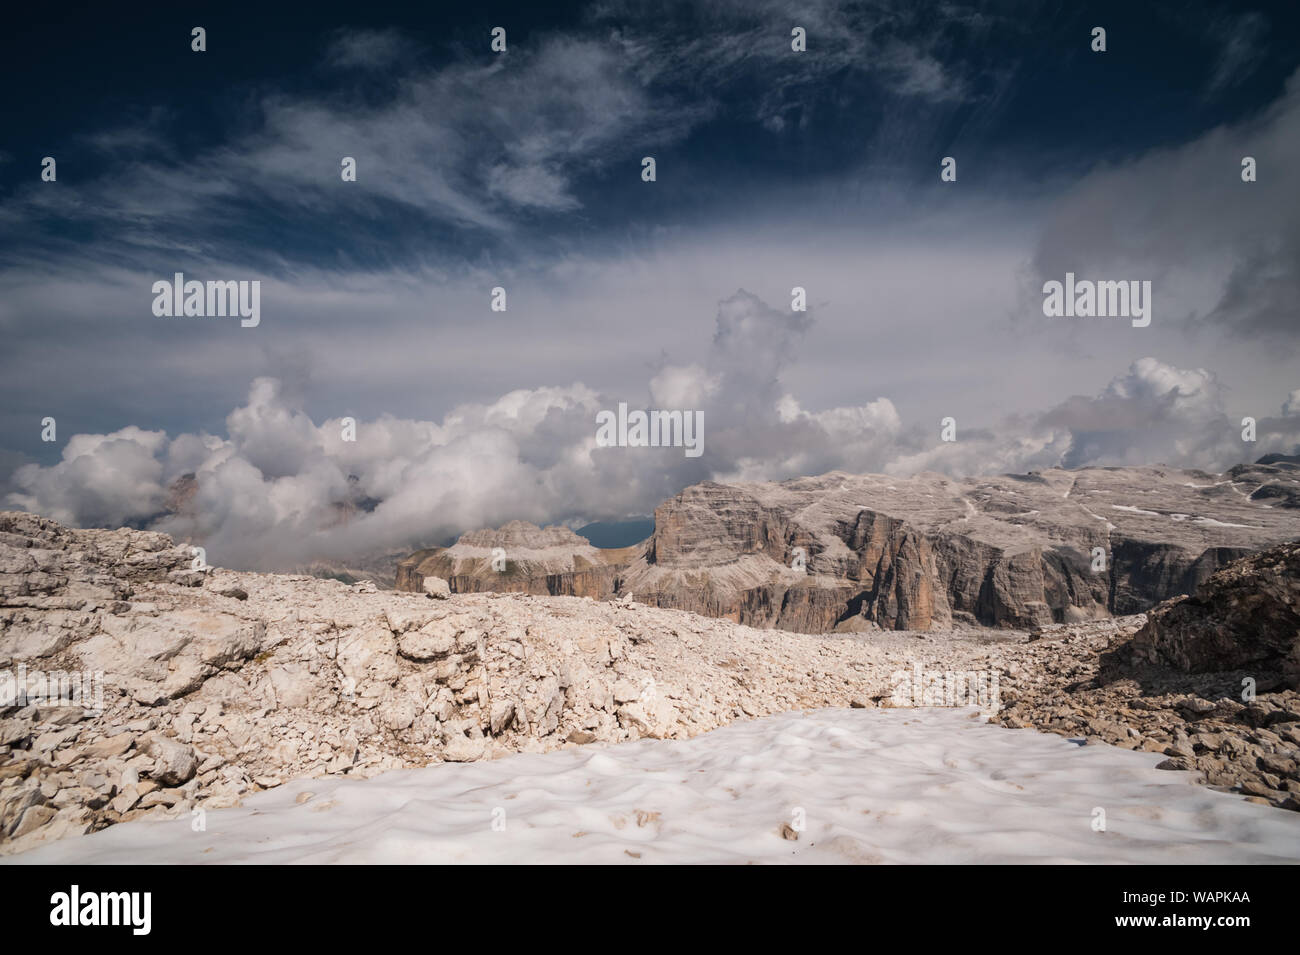 Il Sasso Pordoi, la 'Terrazza delle Dolomiti in Alto Adige, Italia Foto Stock